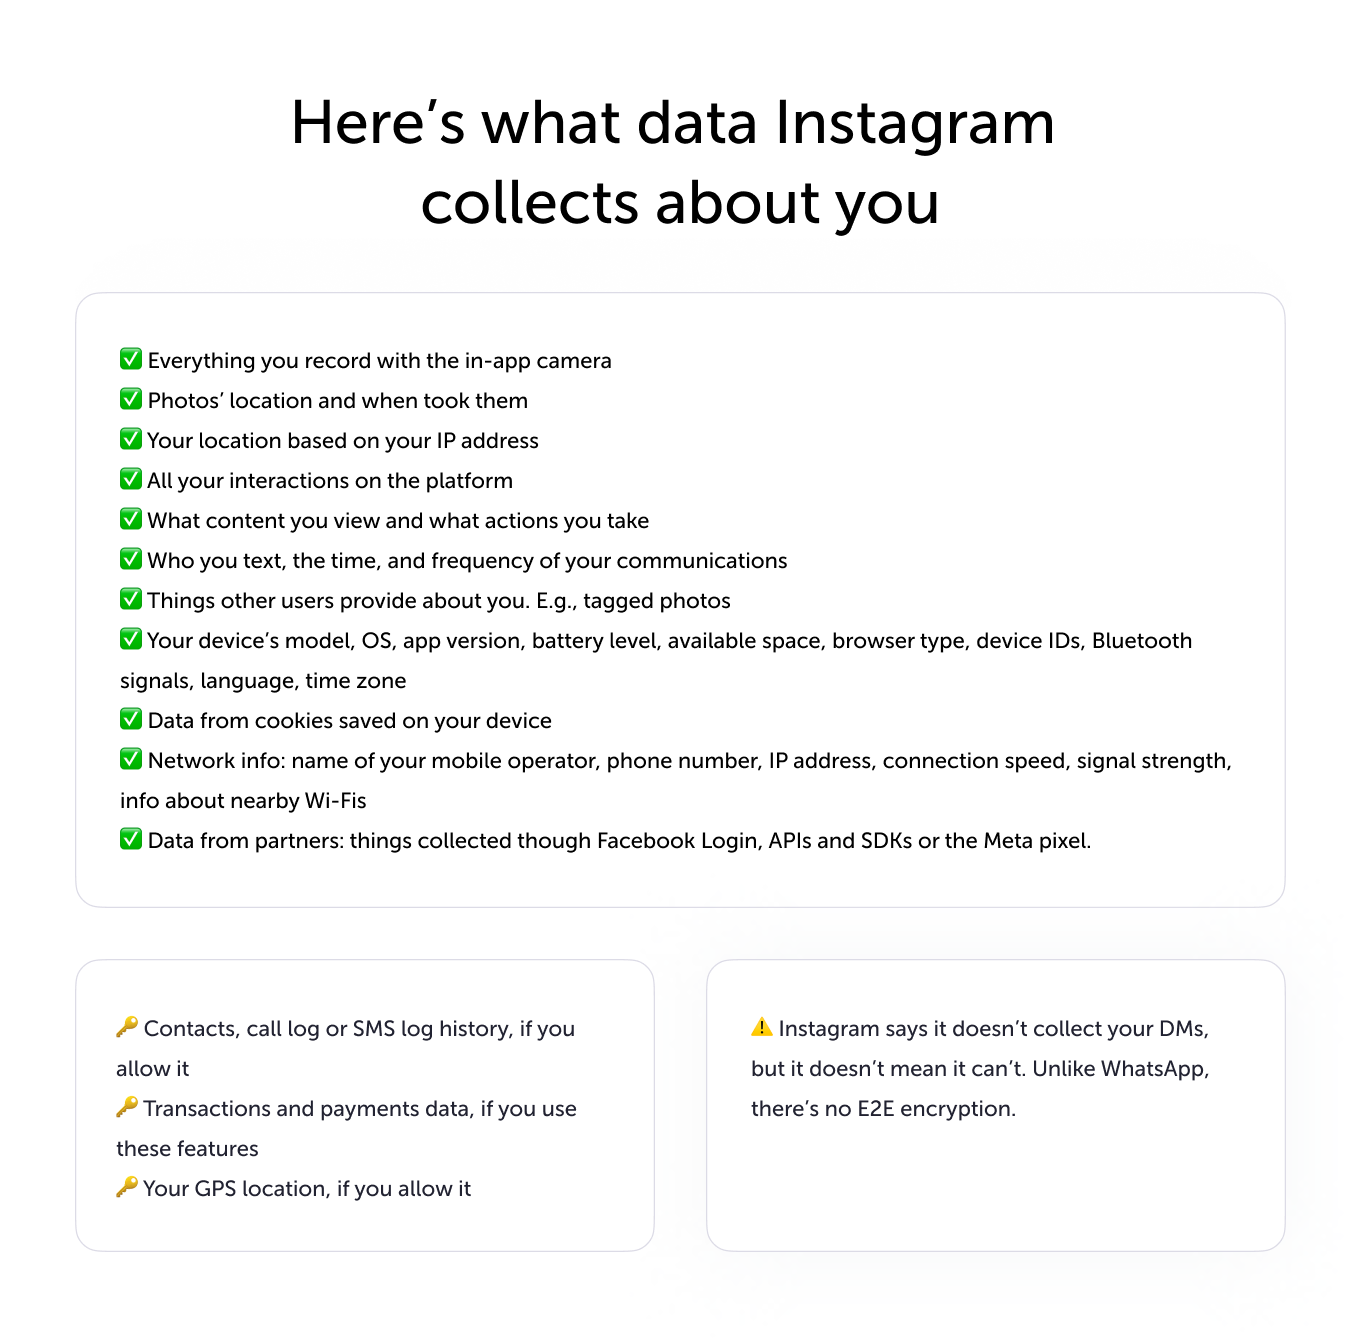 quais dados o Instagram coleta sobre você